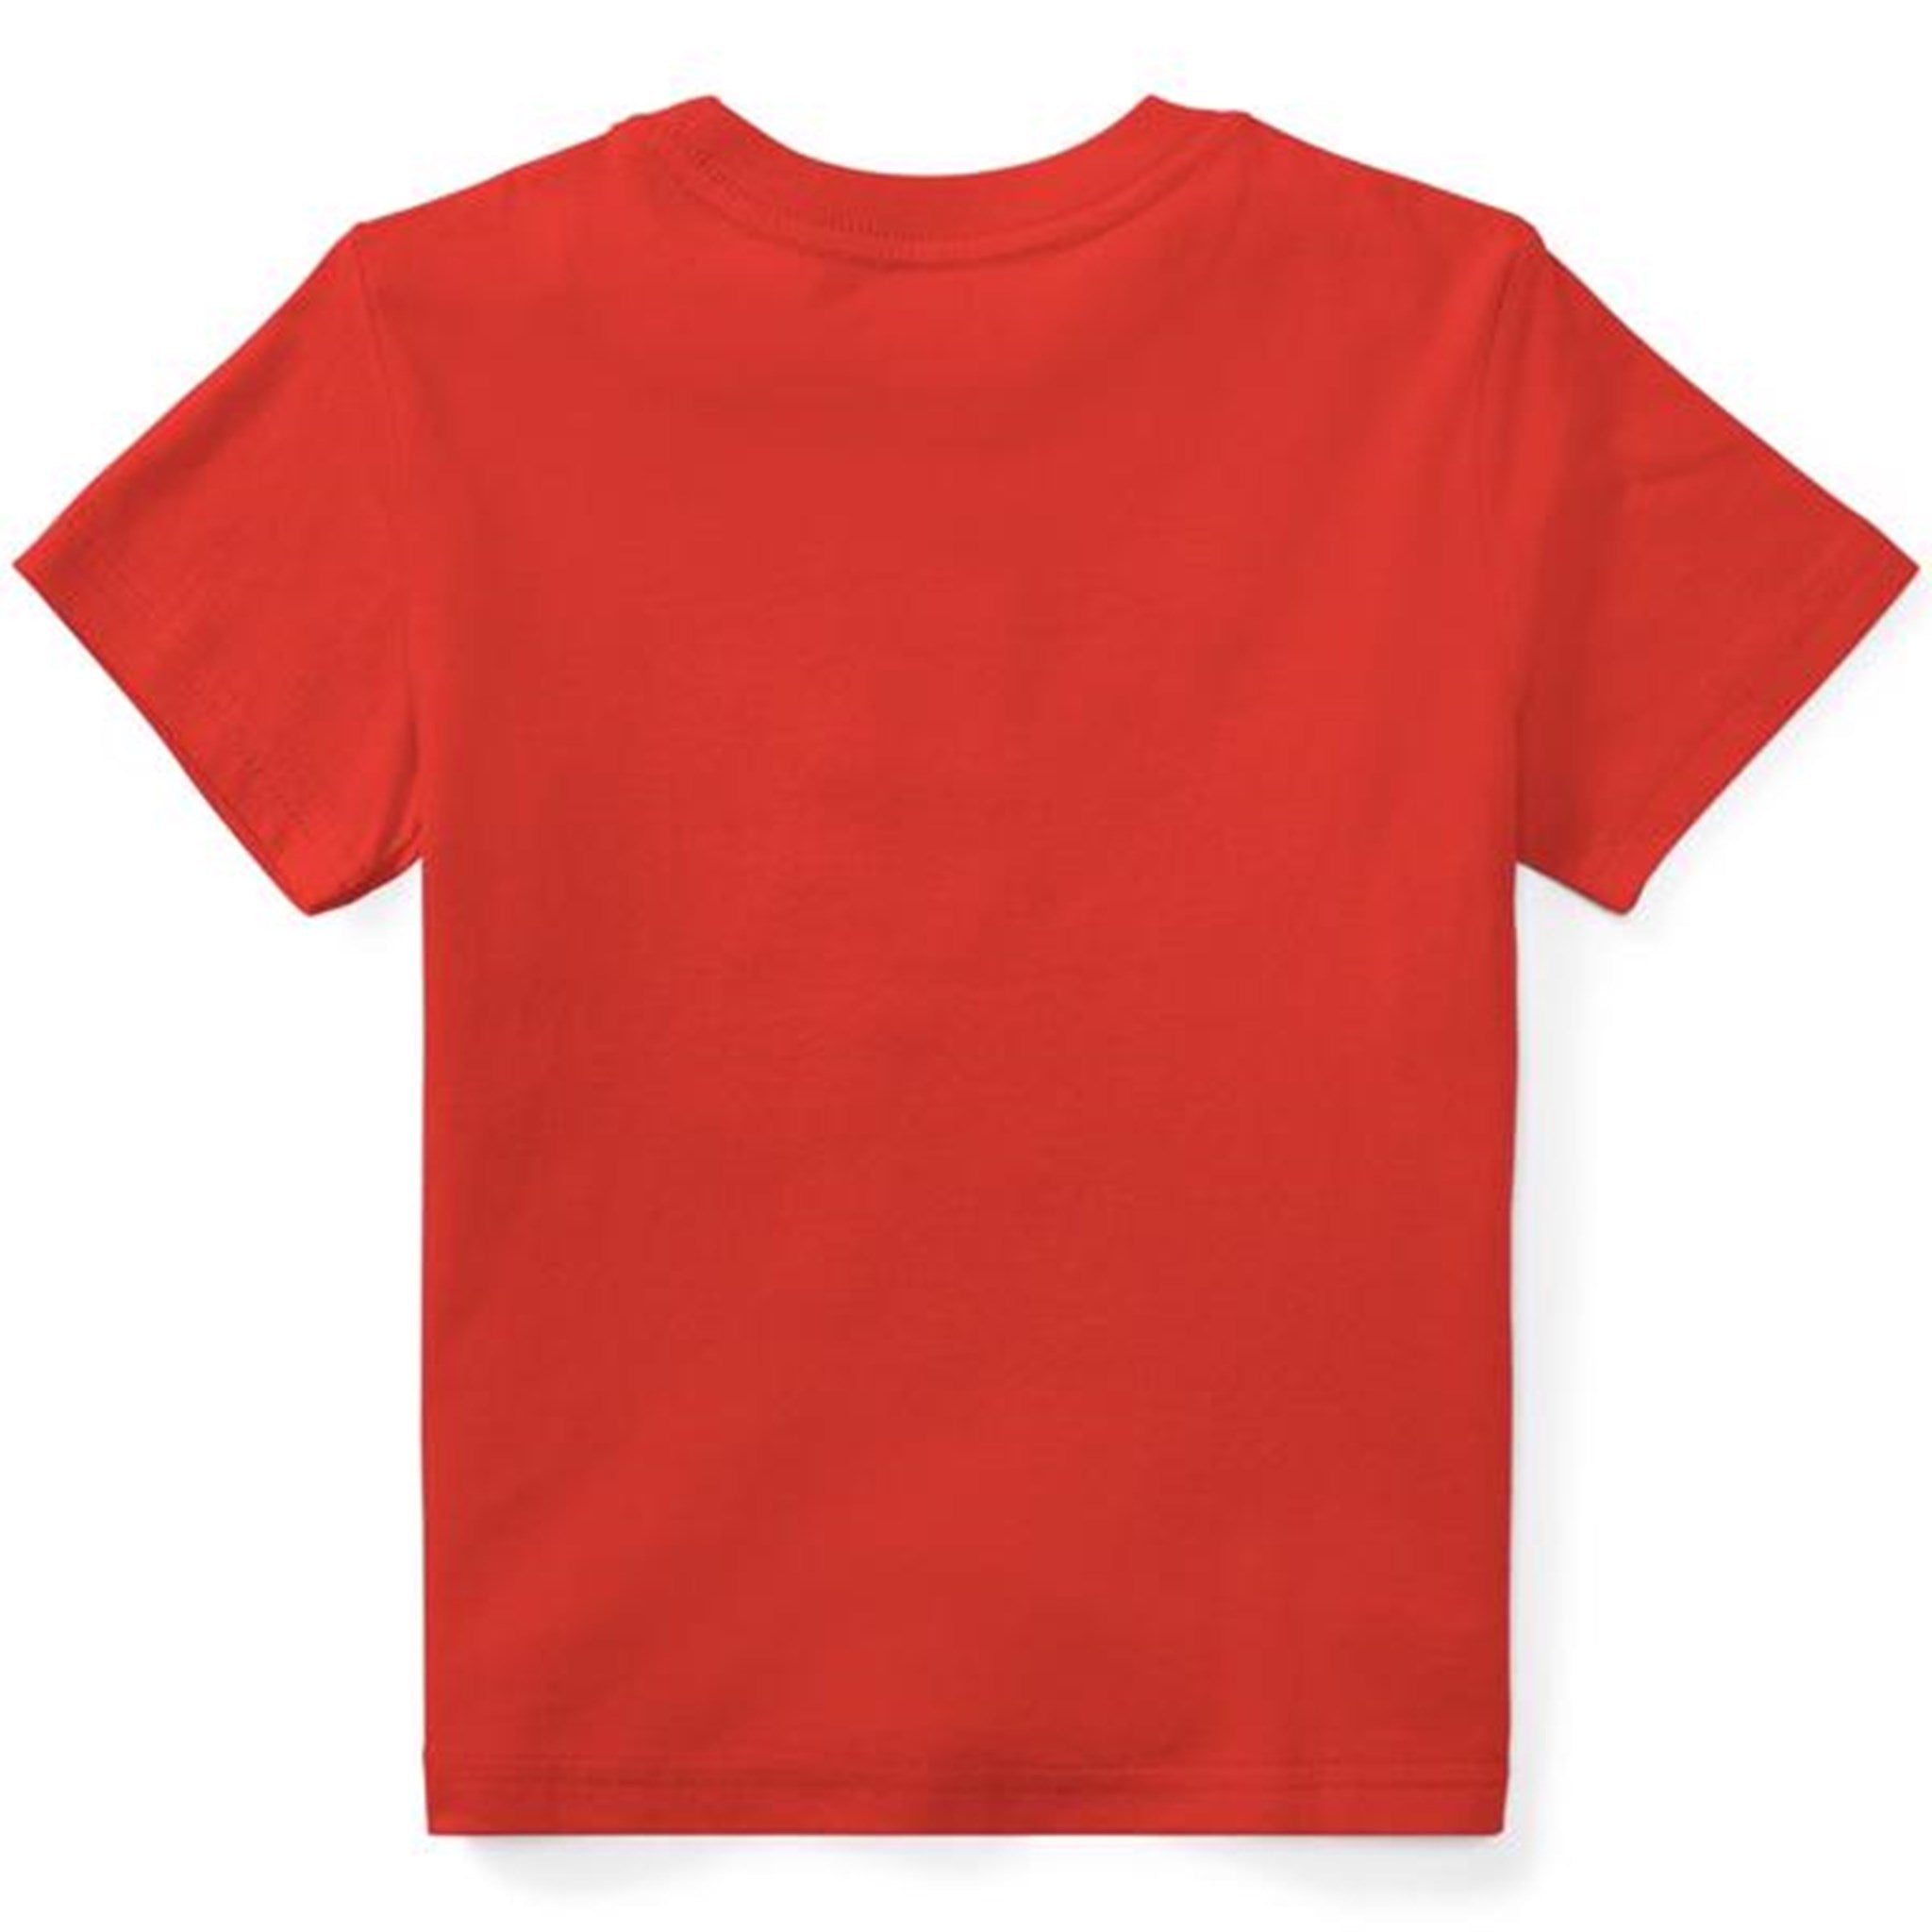 Polo Ralph Lauren Boy Short Sleeved T-shirt Red 2